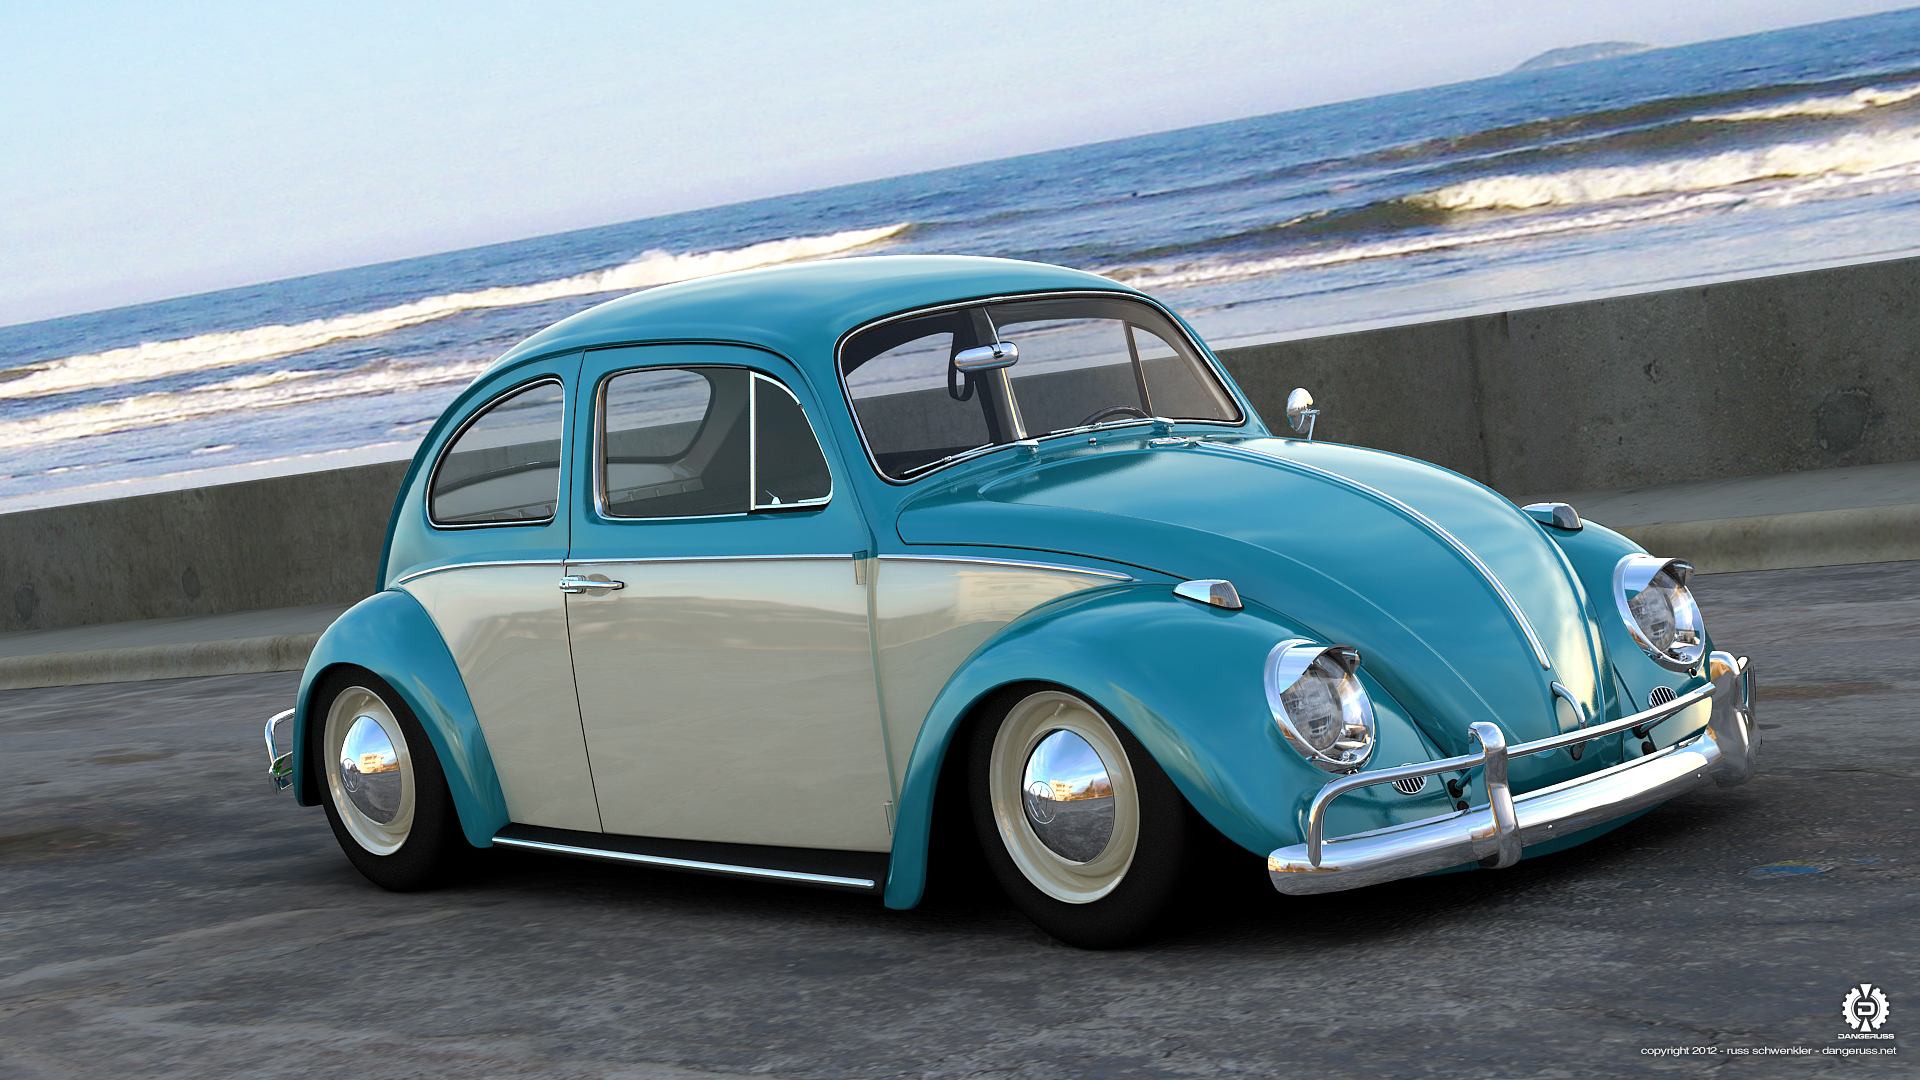 Volkswagen Beetle Wallpapers